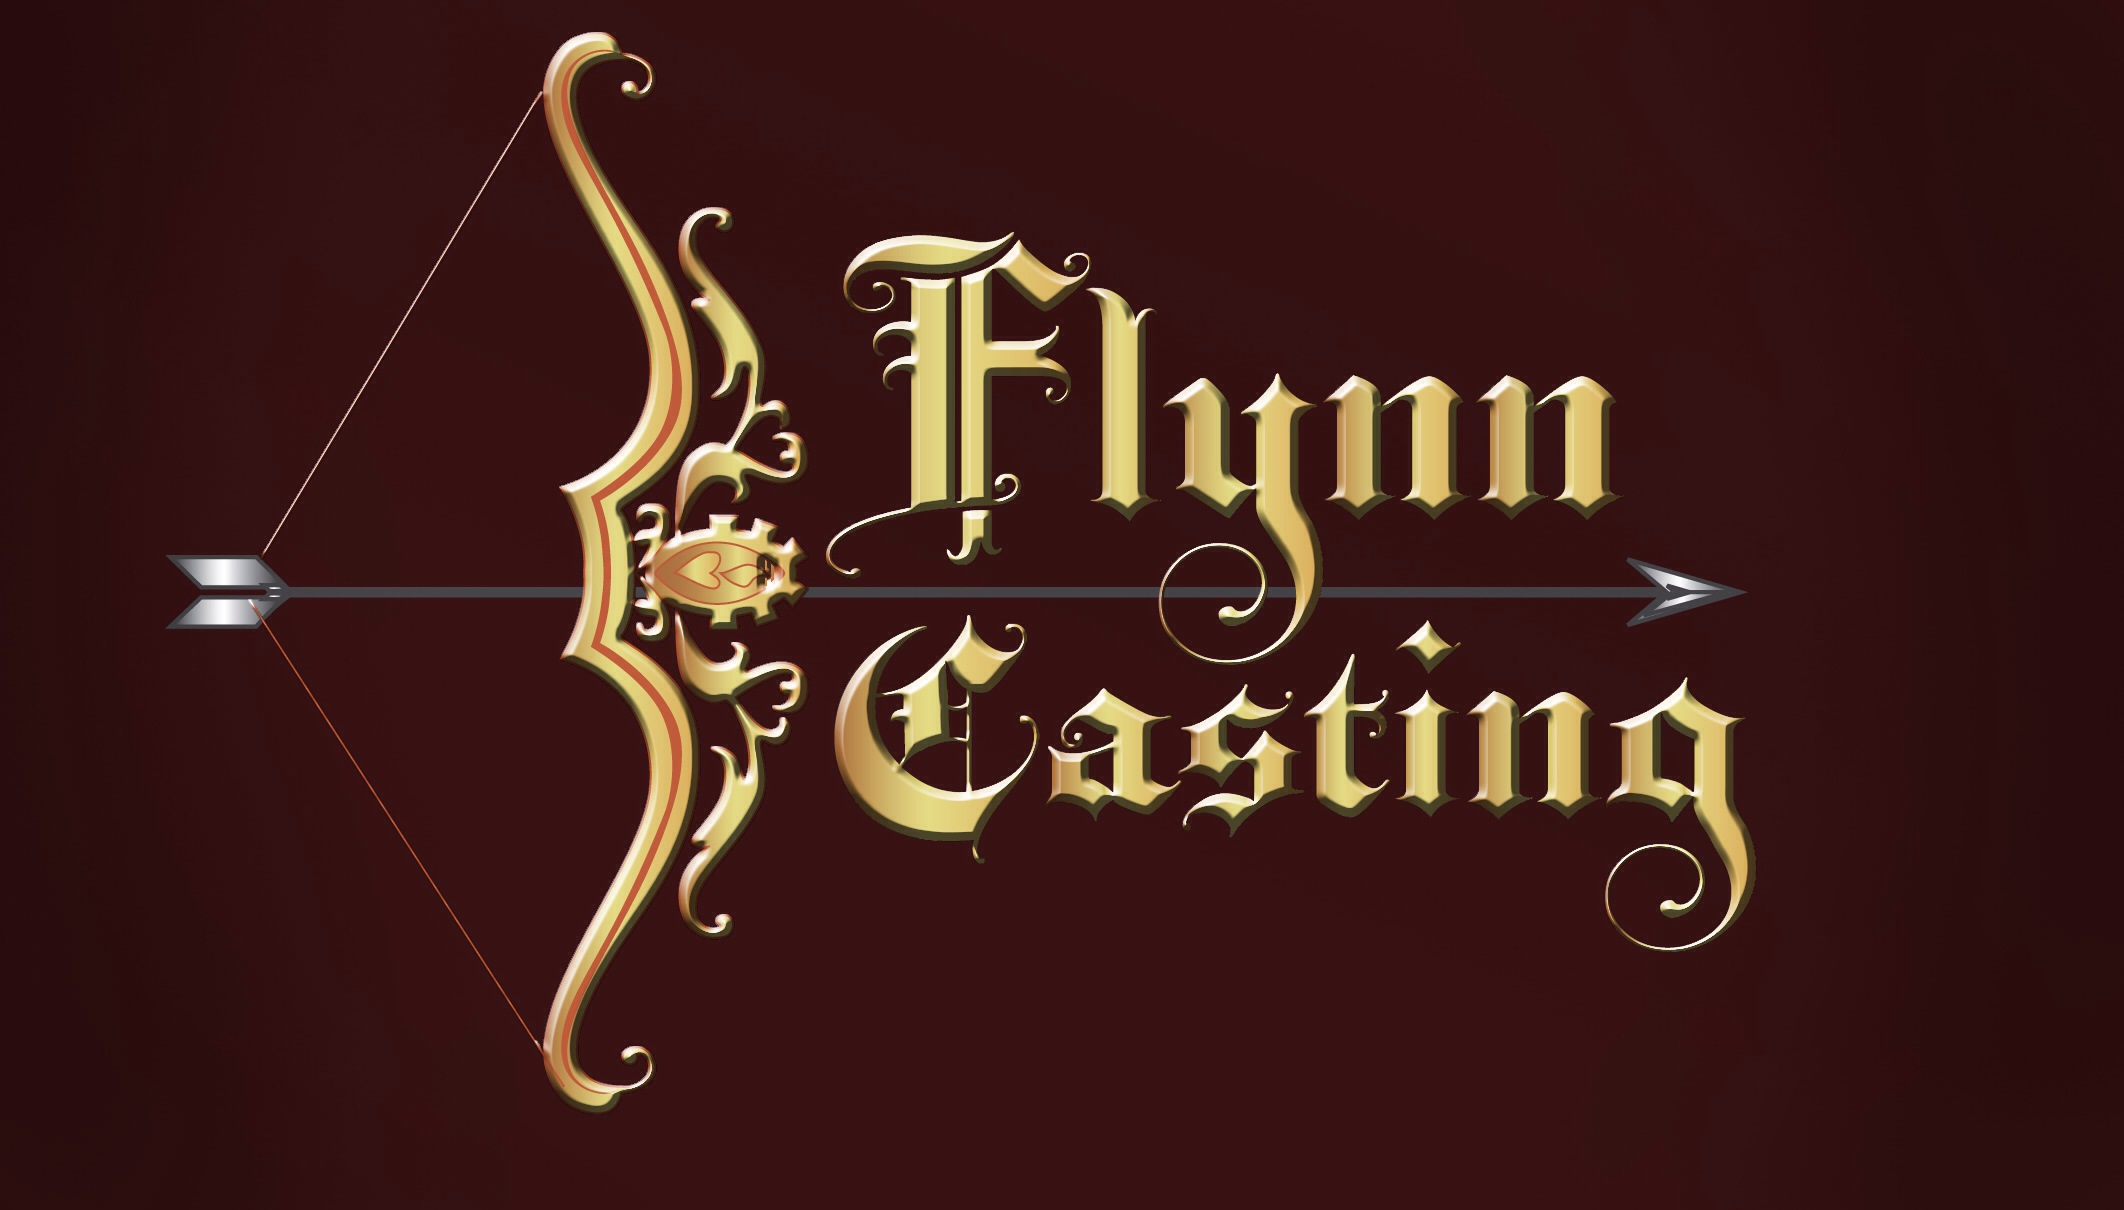 Flynn Casting